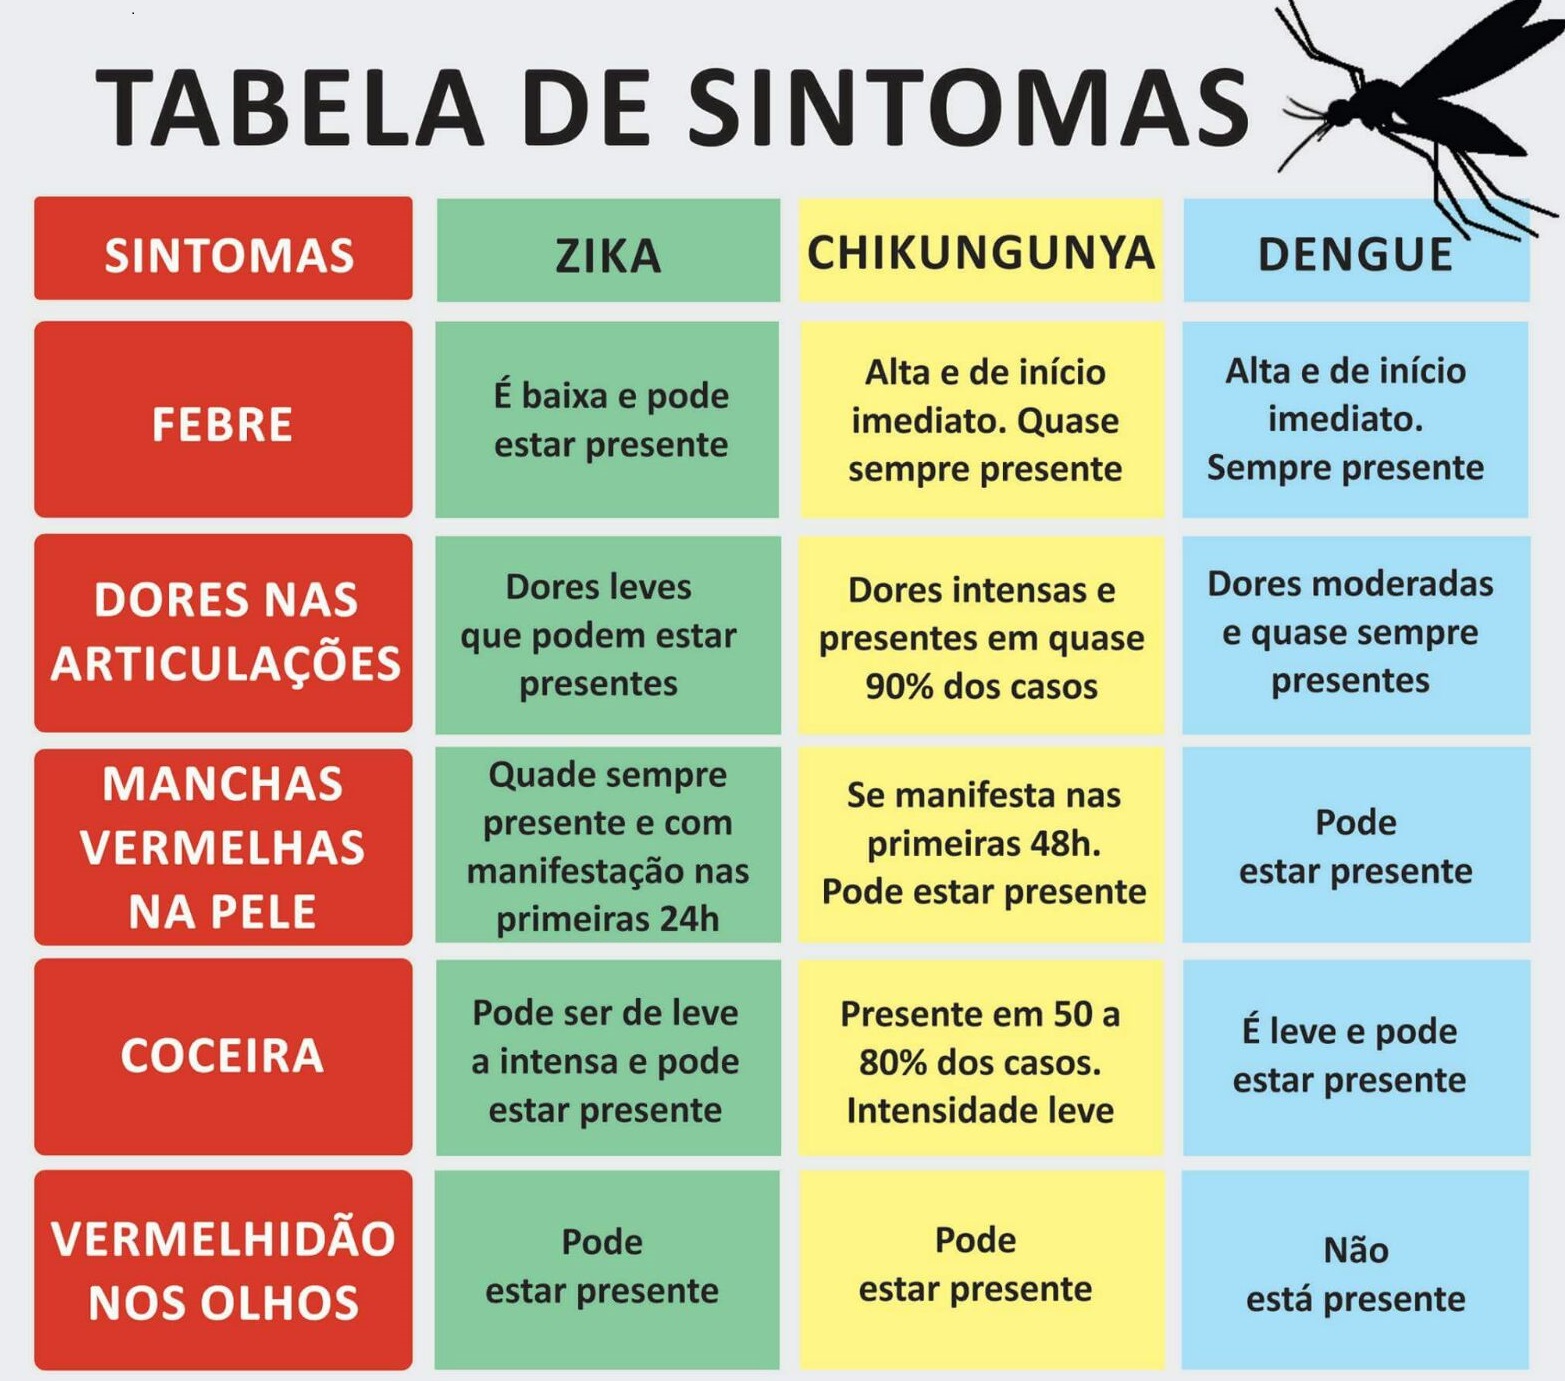 Zika e dengue.jpg